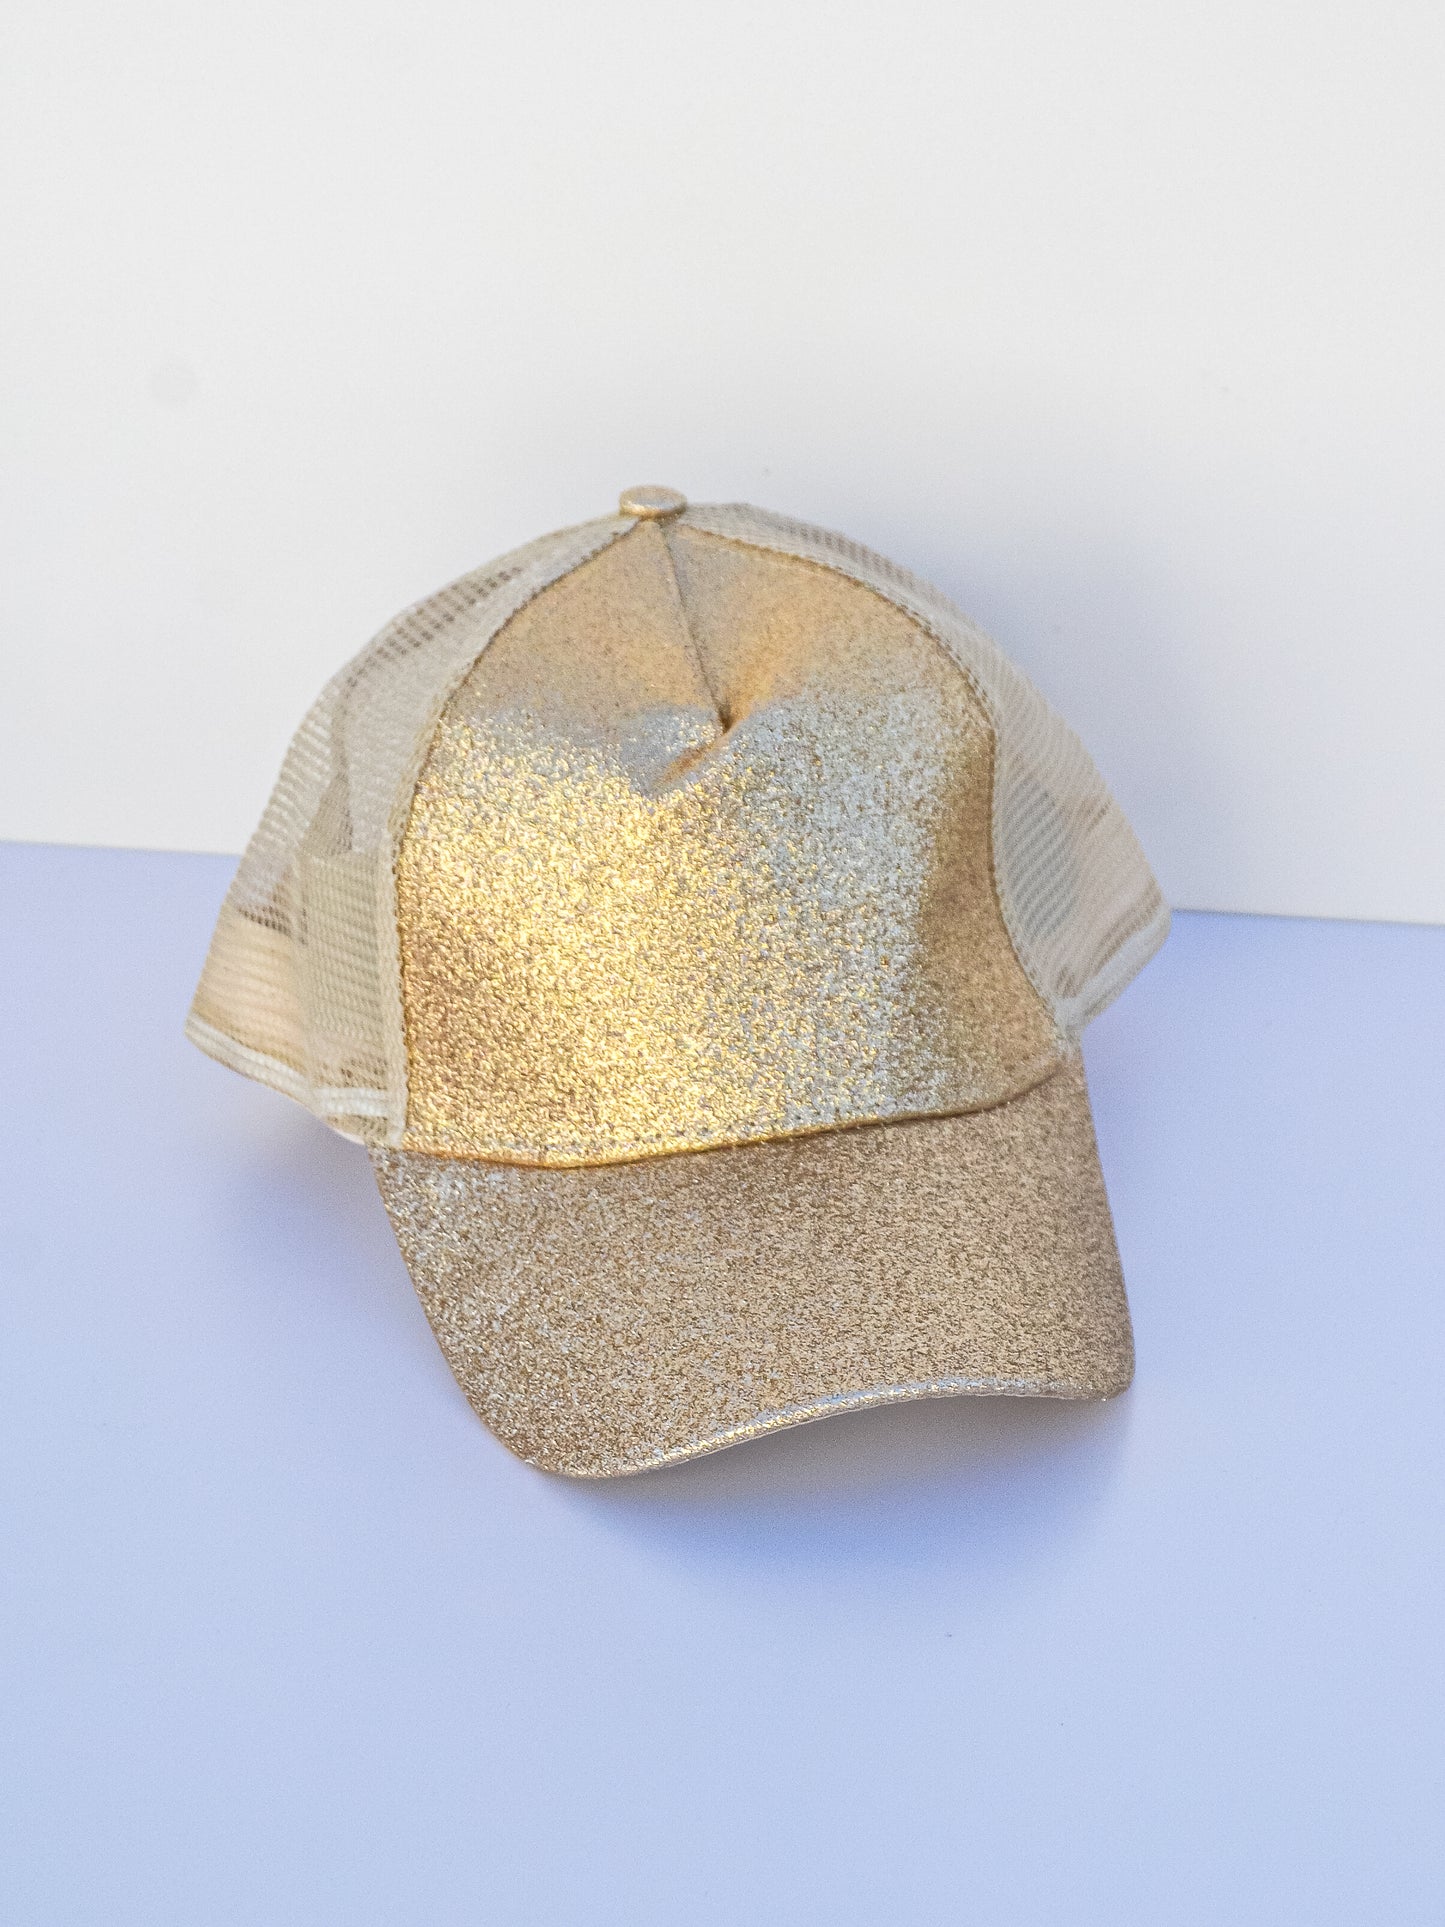 Gold glitter baseball cap. Front view